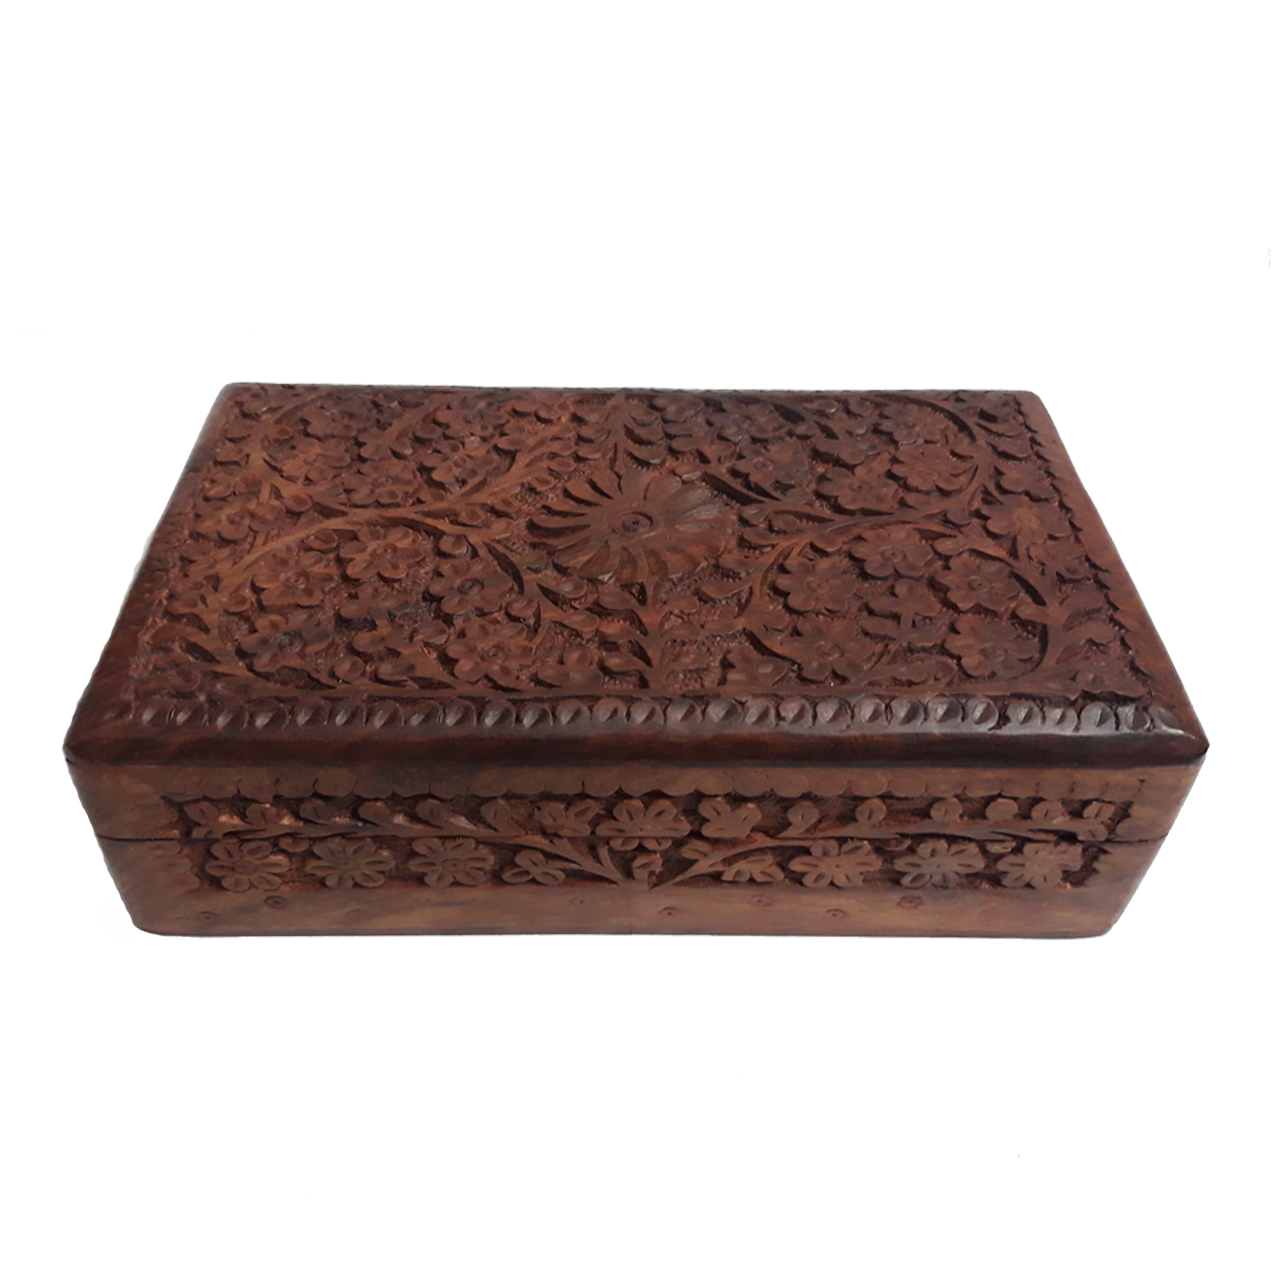 جعبه چوبی منبت کاری هندی مدل 1019-K